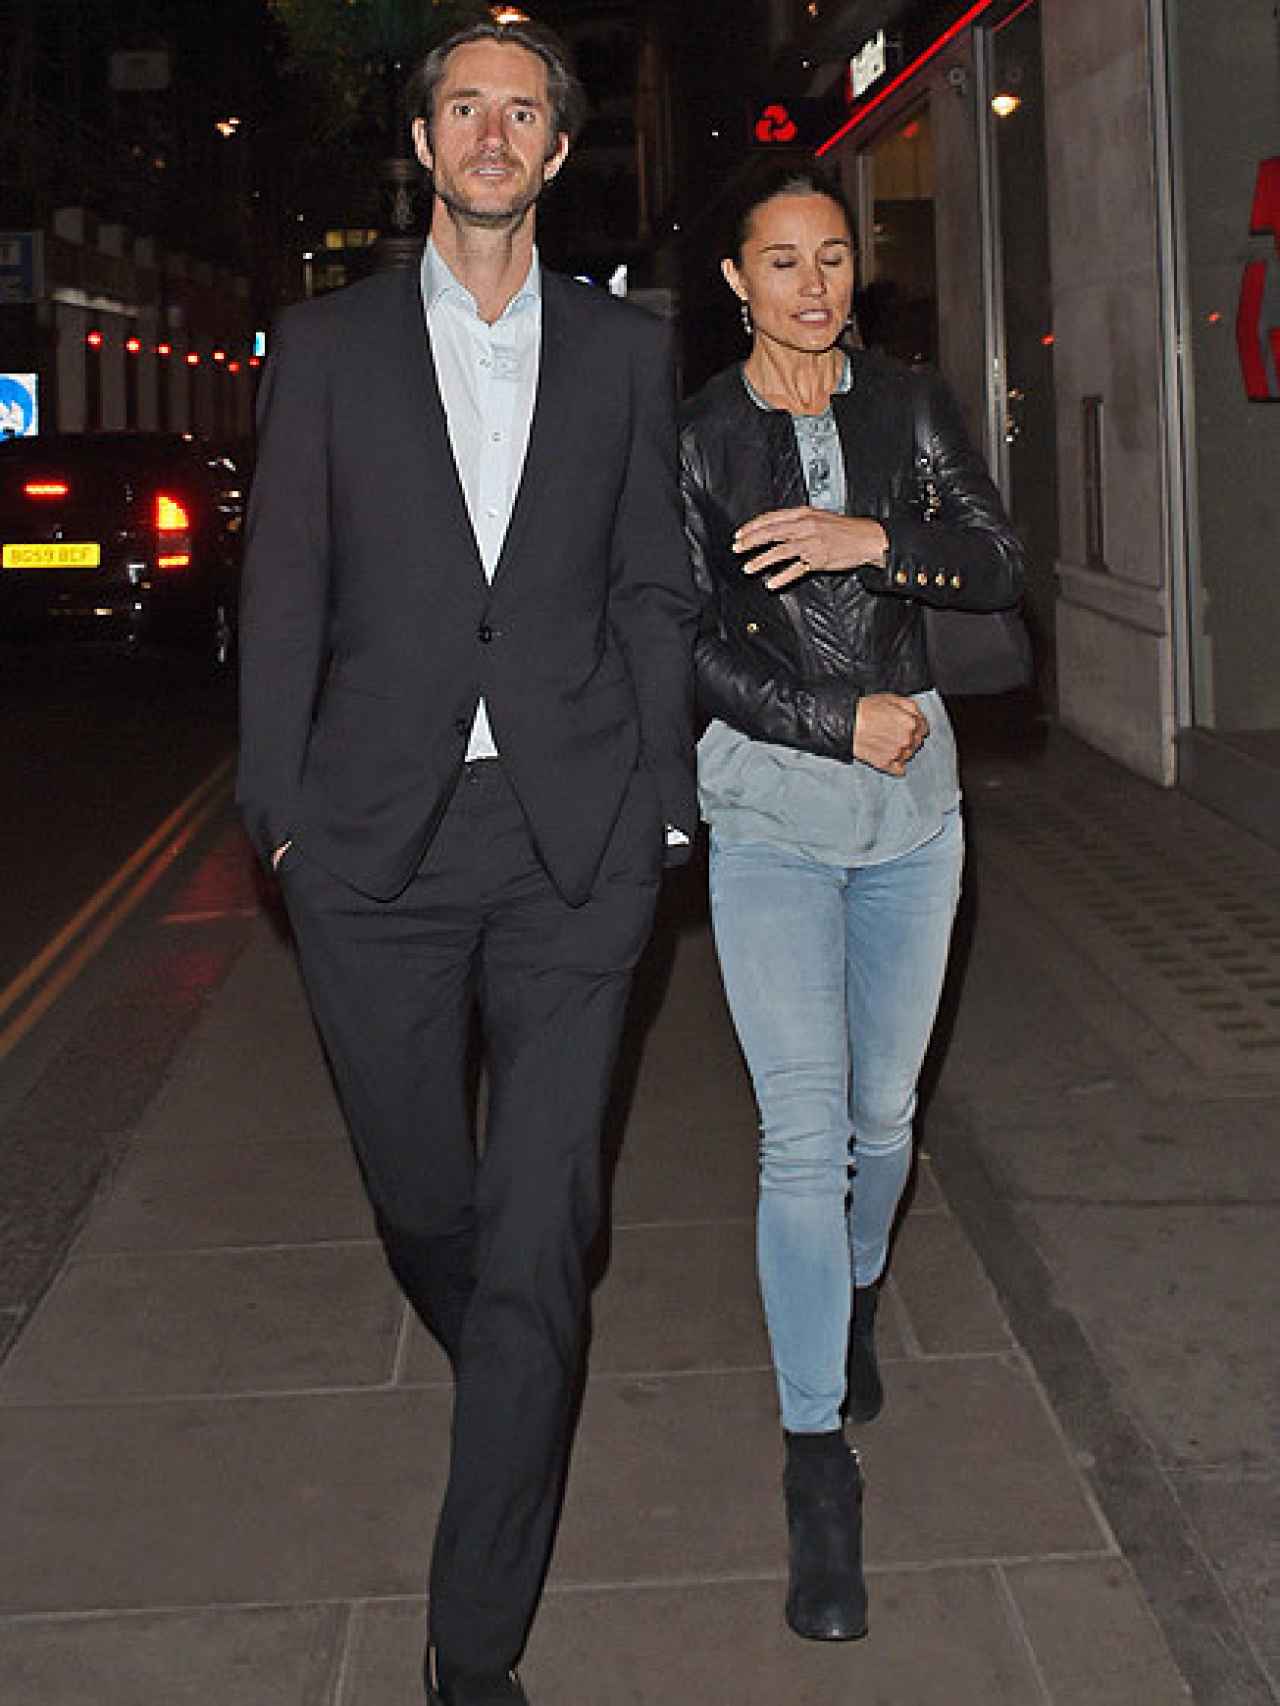 La pareja paseando por las calles de Londres